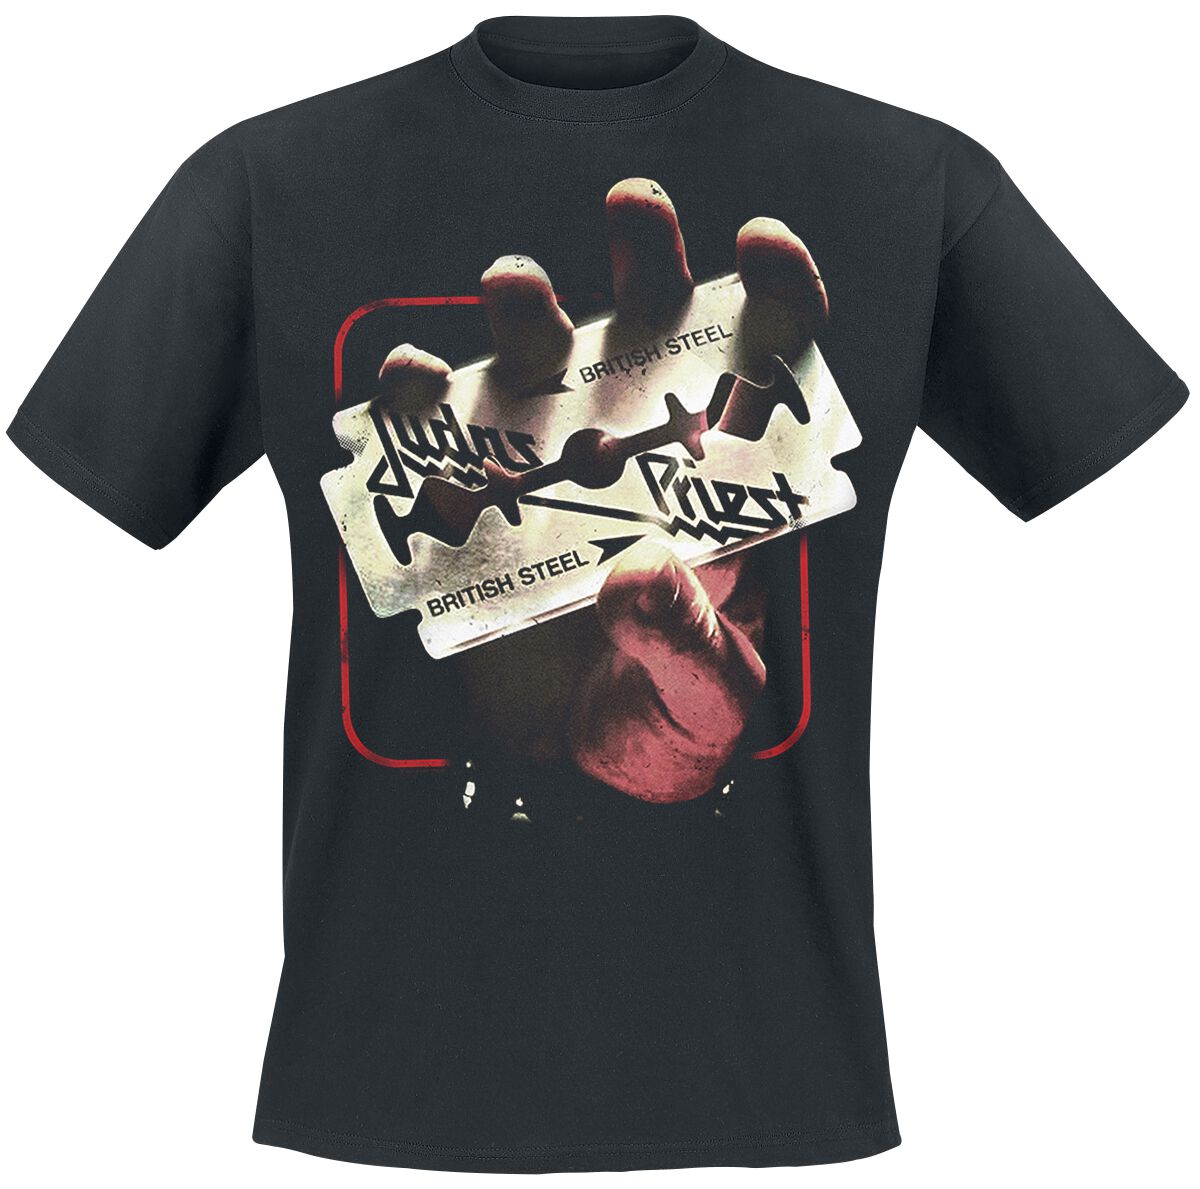 Judas Priest British Steel 50HMY Tour T-Shirt schwarz in L